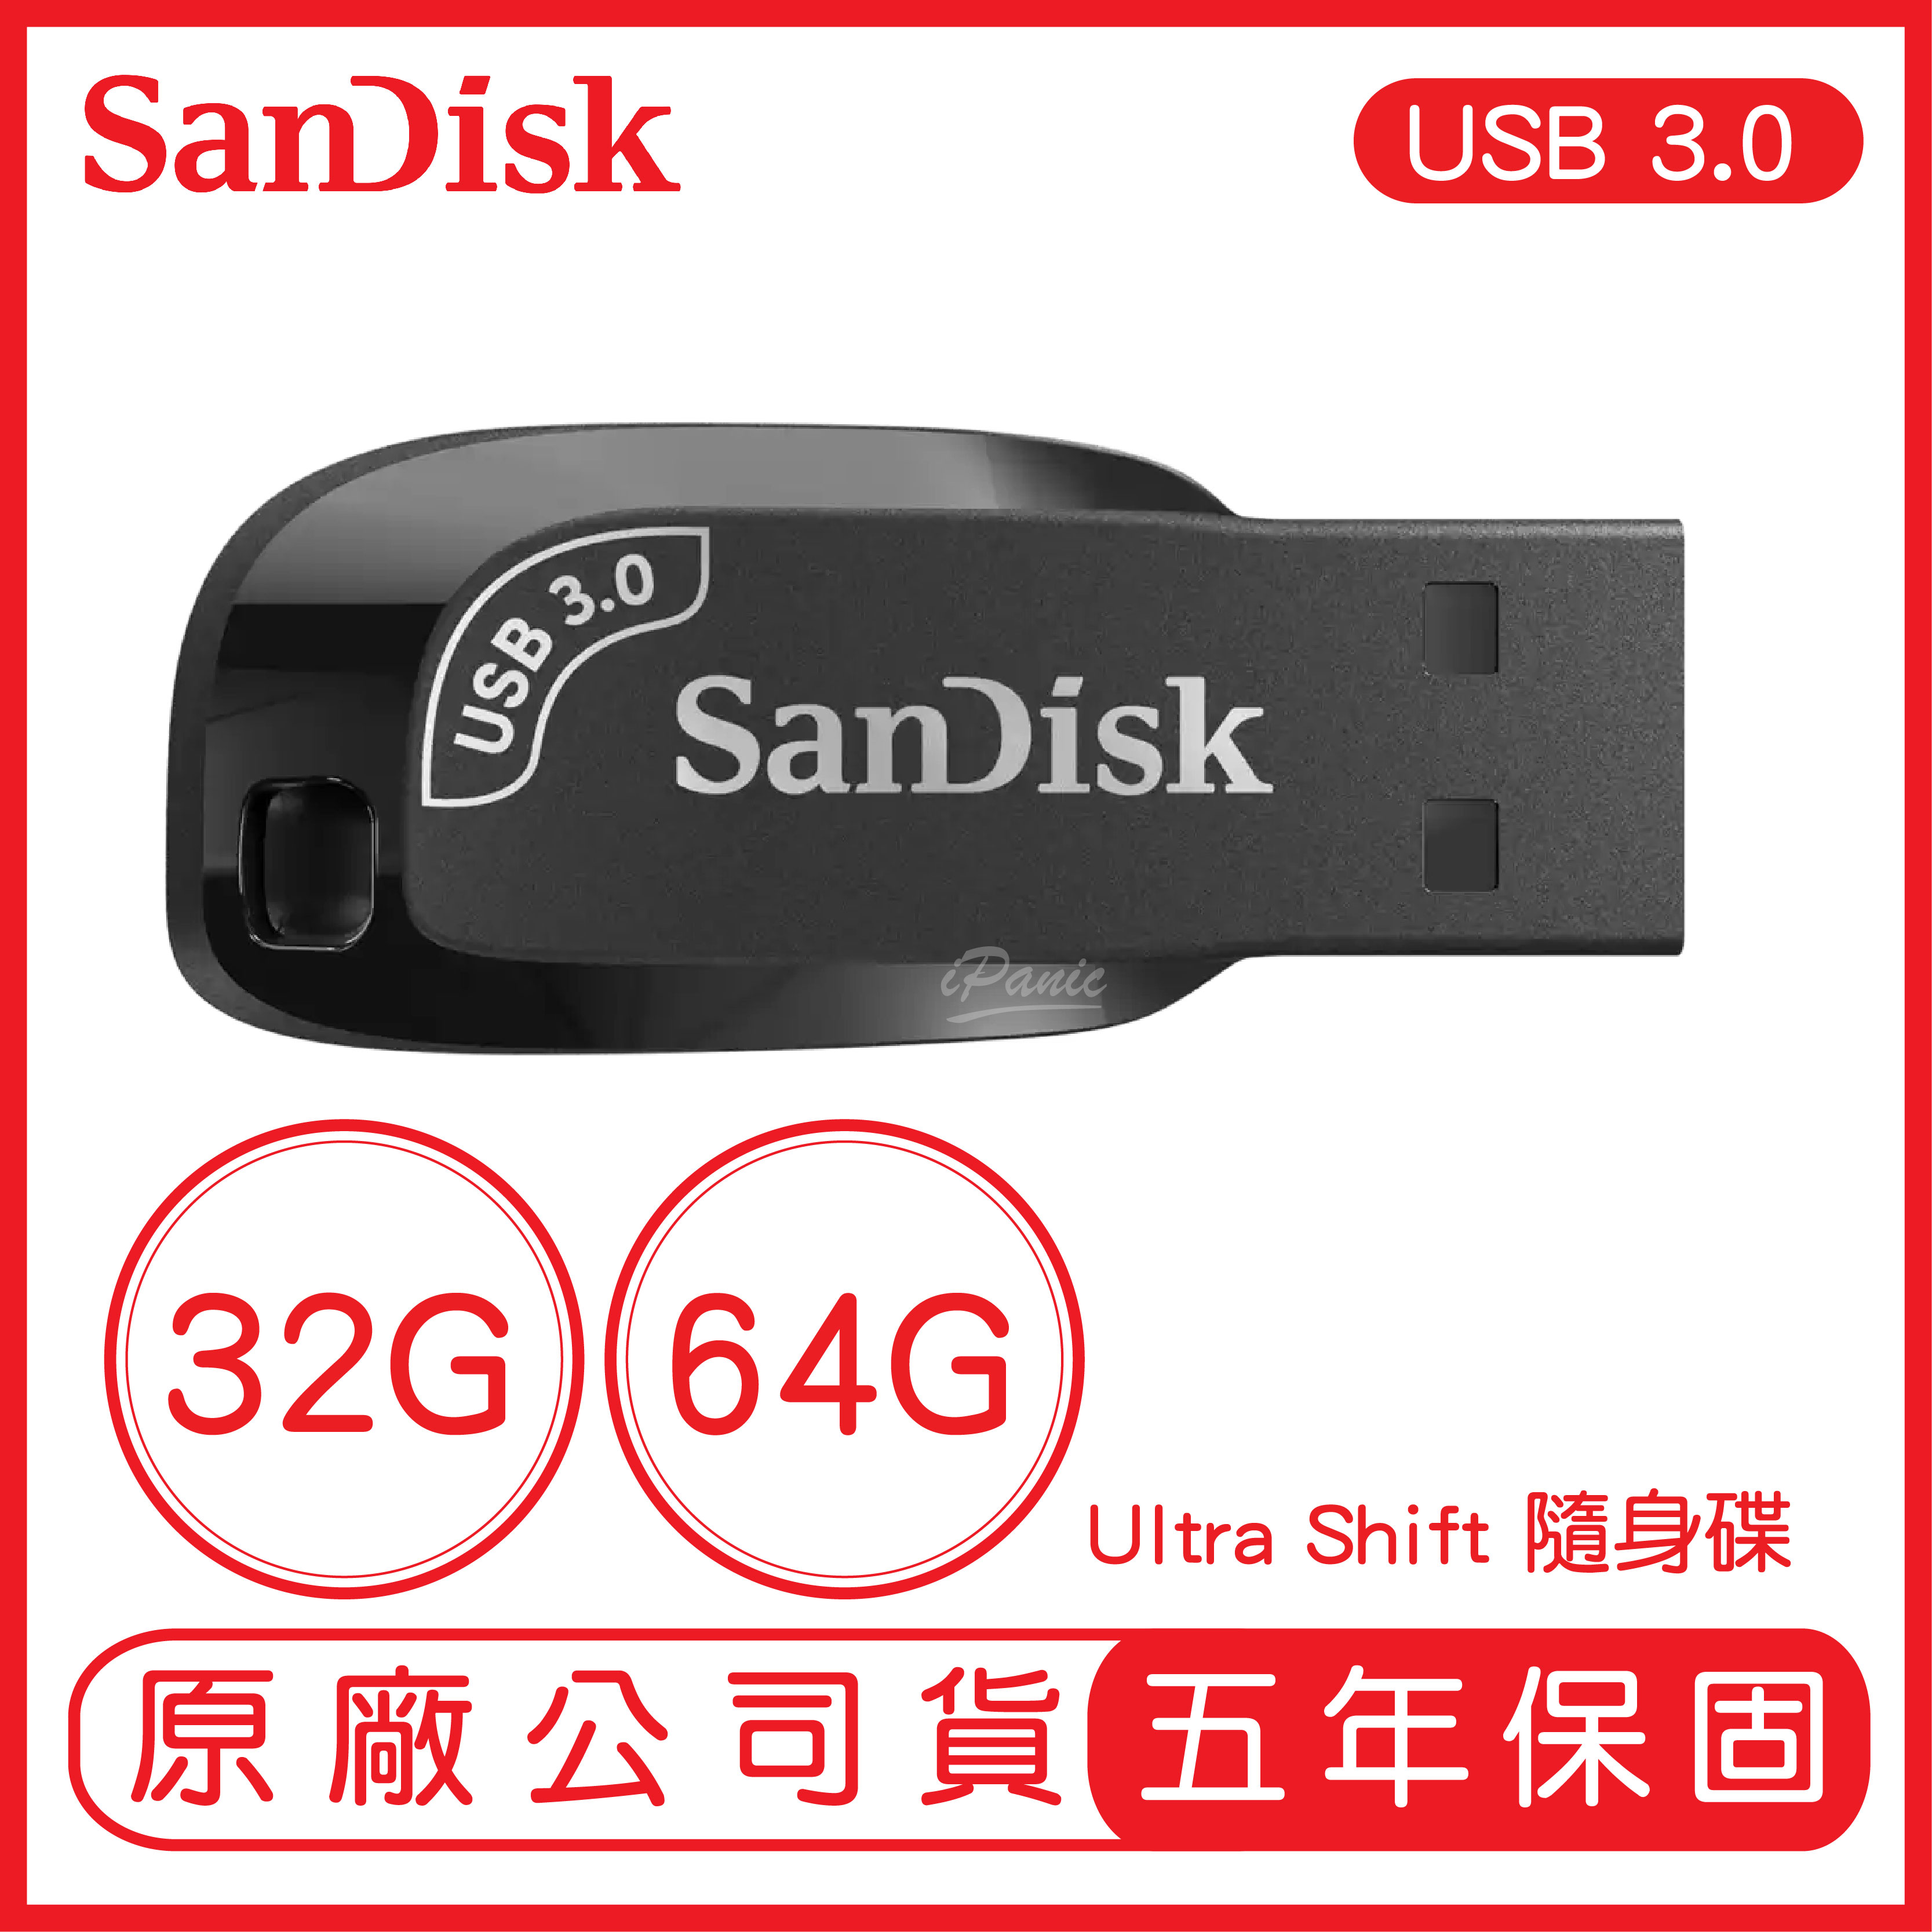 【9%點數】【SanDisk】Ultra Shift USB 3.0 隨身碟 CZ410 台灣公司貨 32G 64G【APP下單9%點數回饋】【限定樂天APP下單】